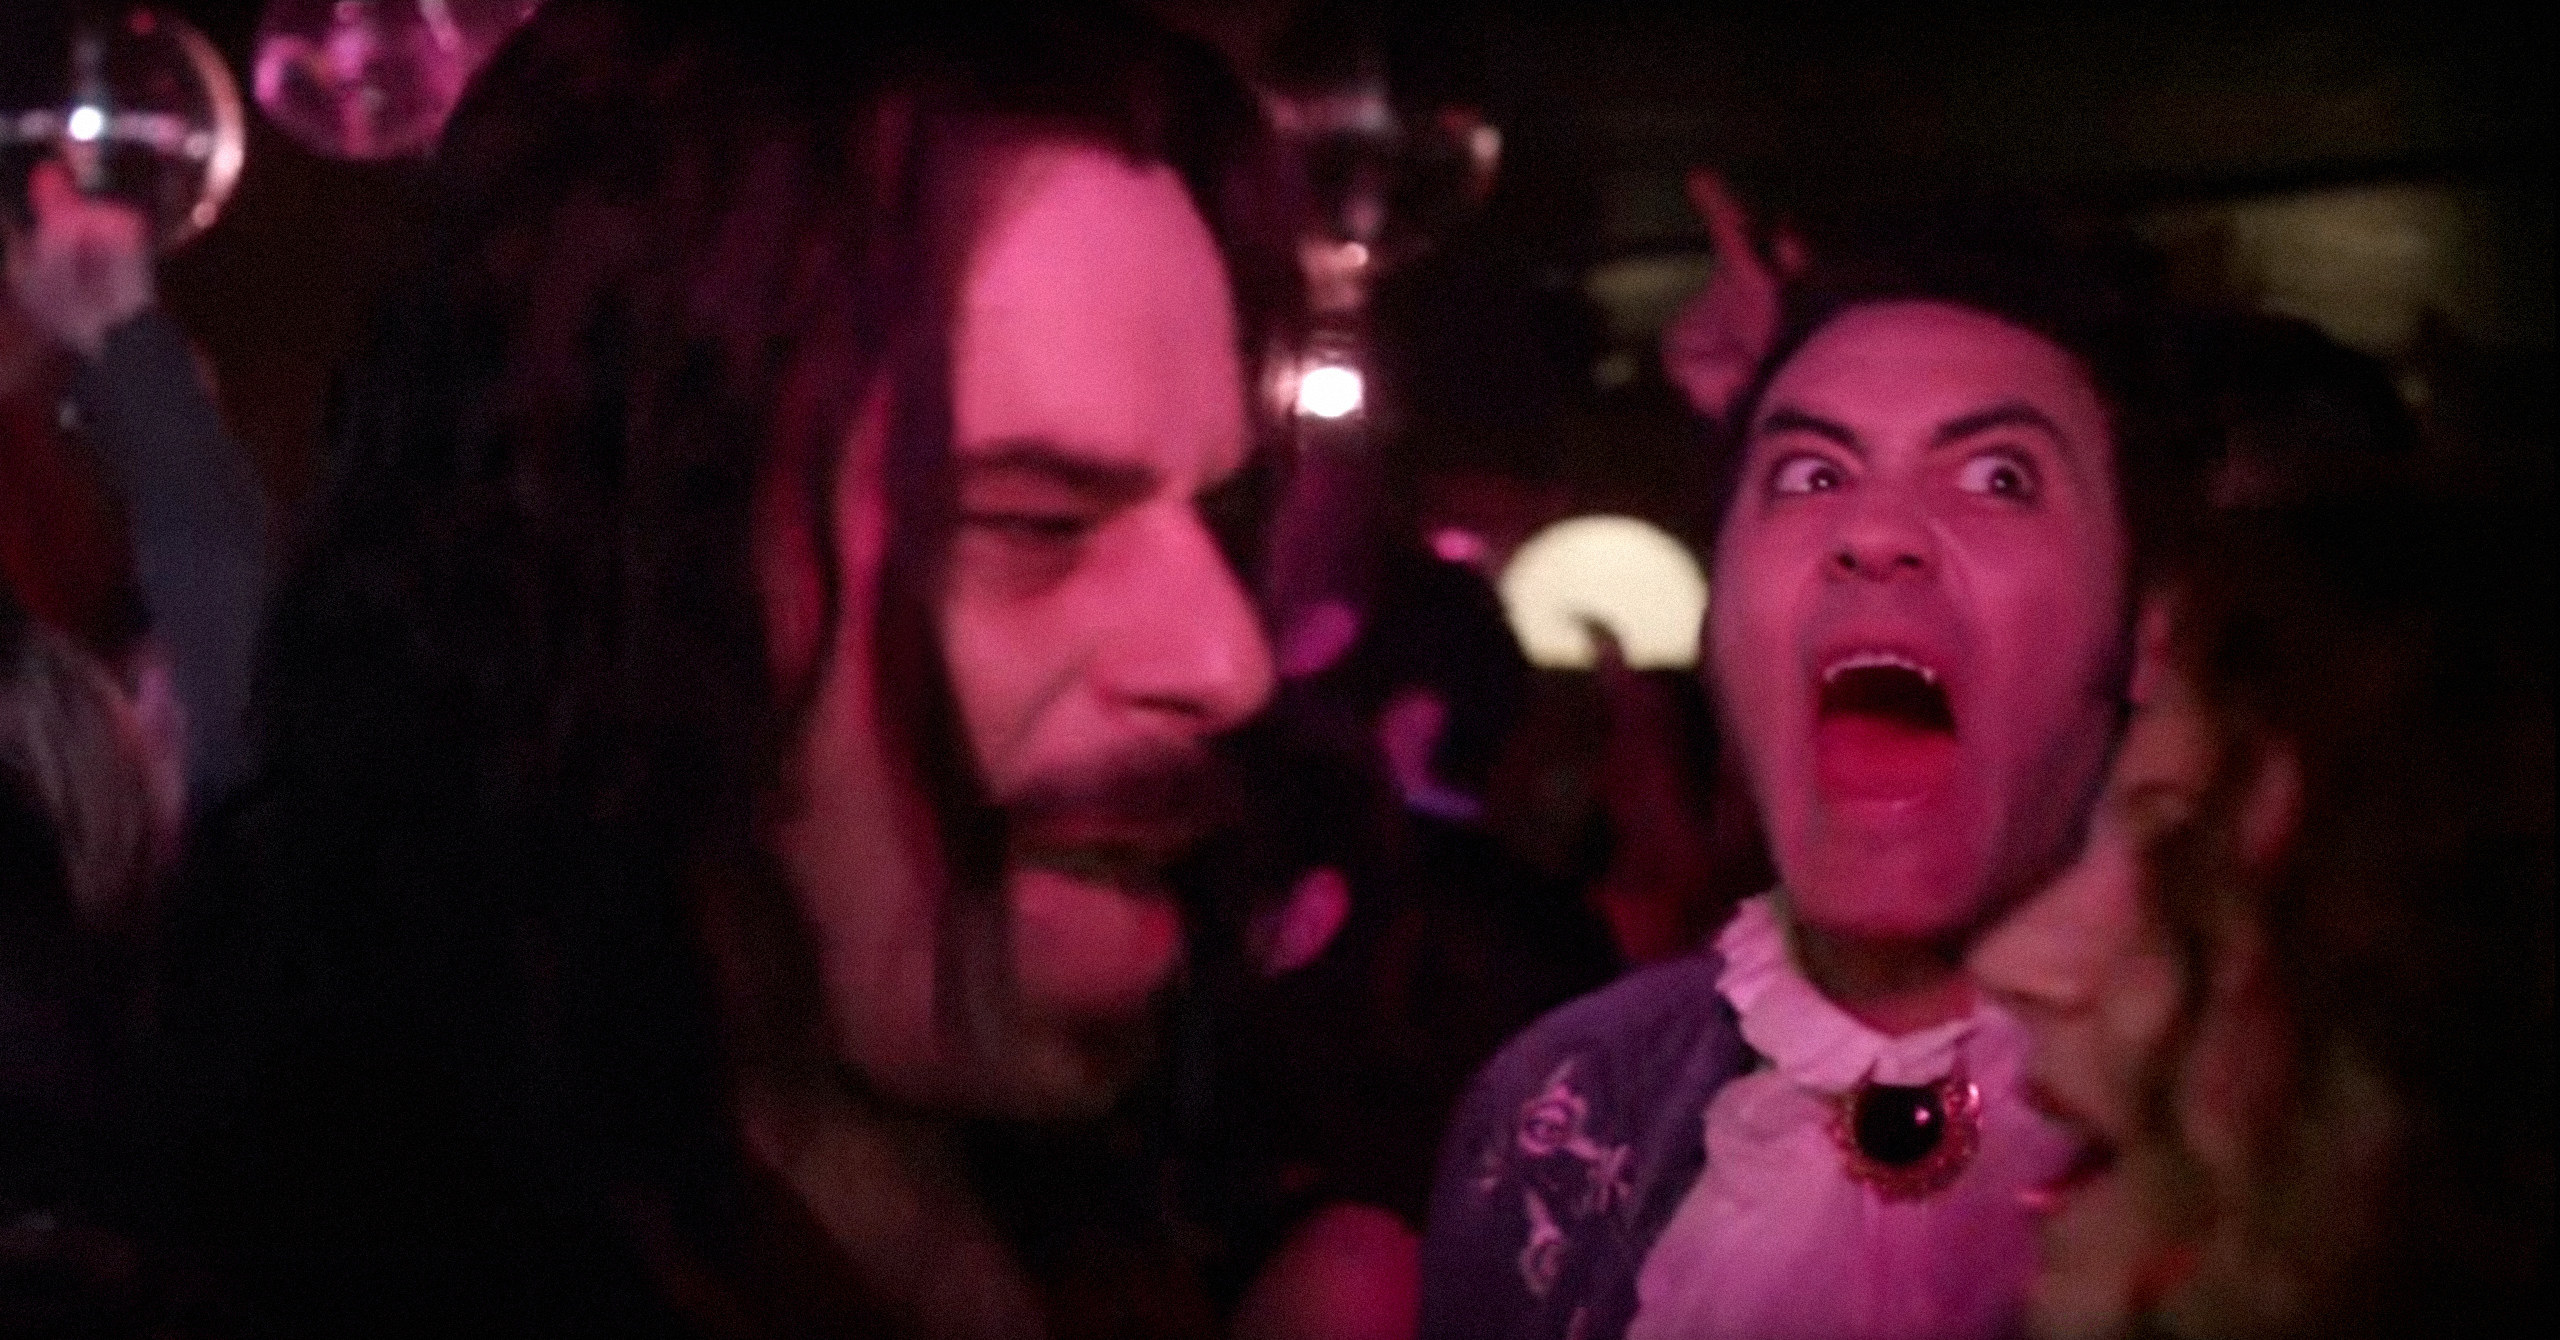 Two goofy looking vampires in a nightclub